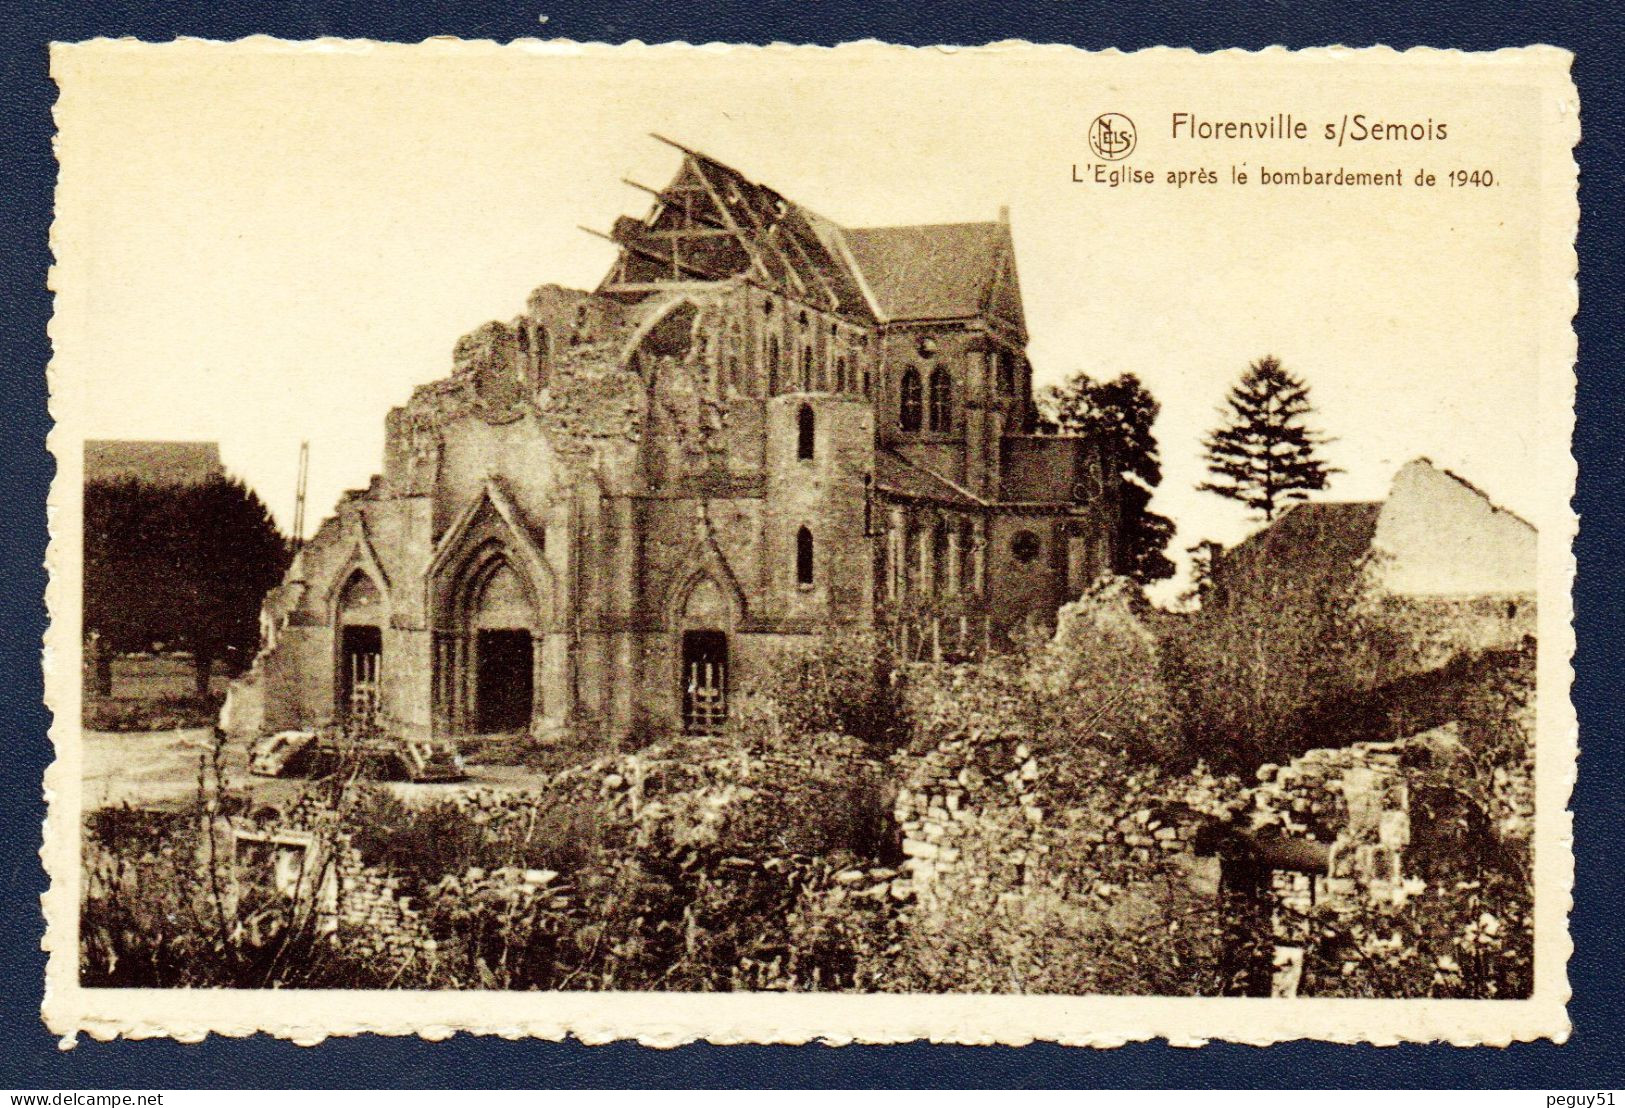 Florenville. Eglise Notre-Dame De L'Assomption  Bombardée En Mai 1940 Par Les Soldats Français. - Florenville